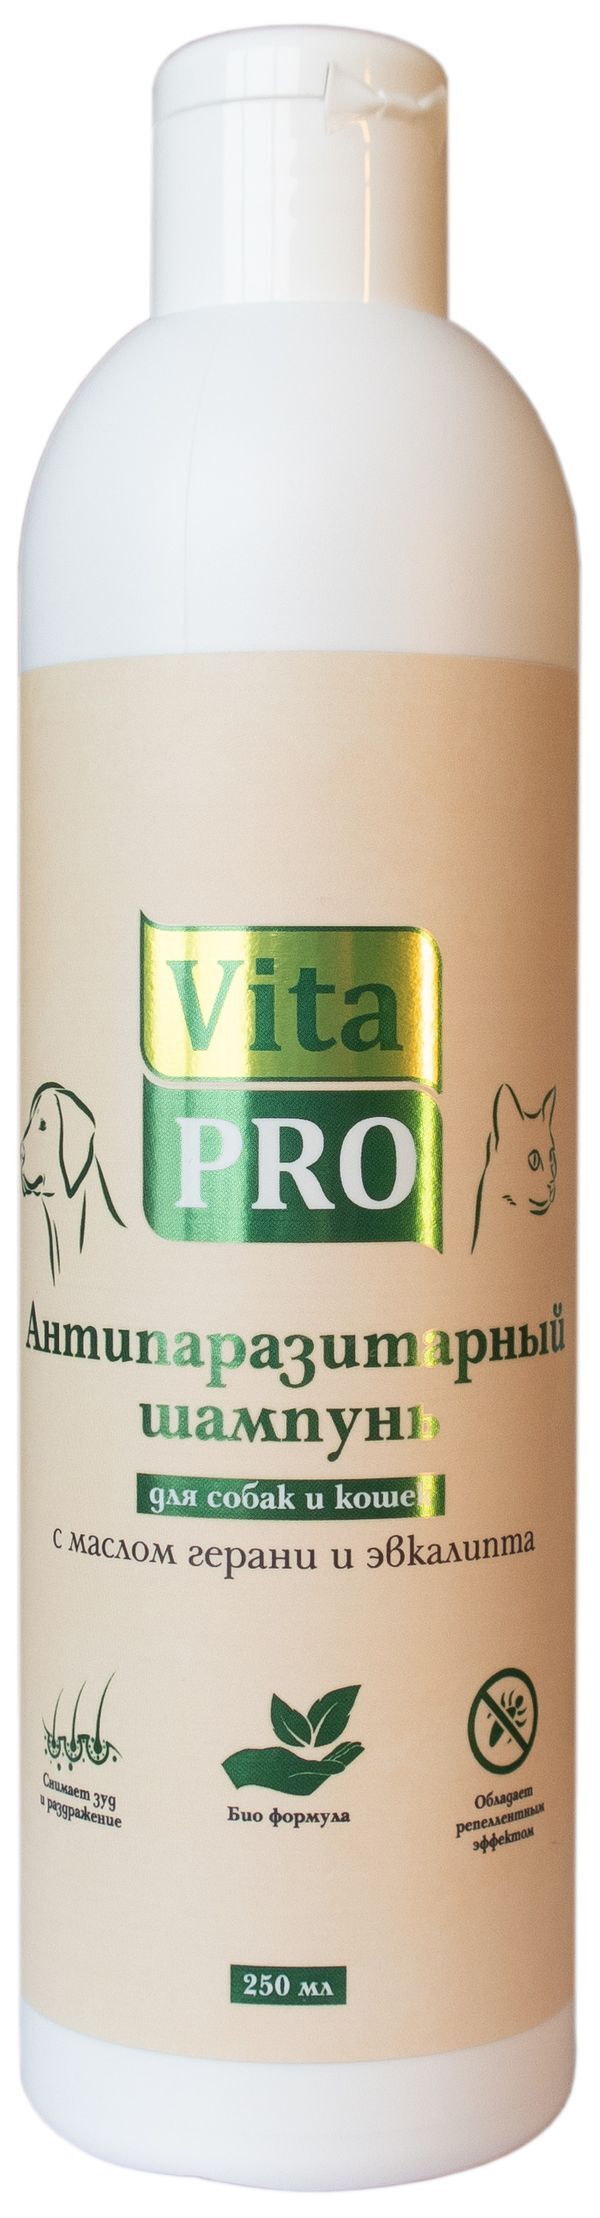 Vita Pro 250 мл биошампунь для собак и кошек антипаразитарный универсальный с маслом герани и эвкалипта 1х15